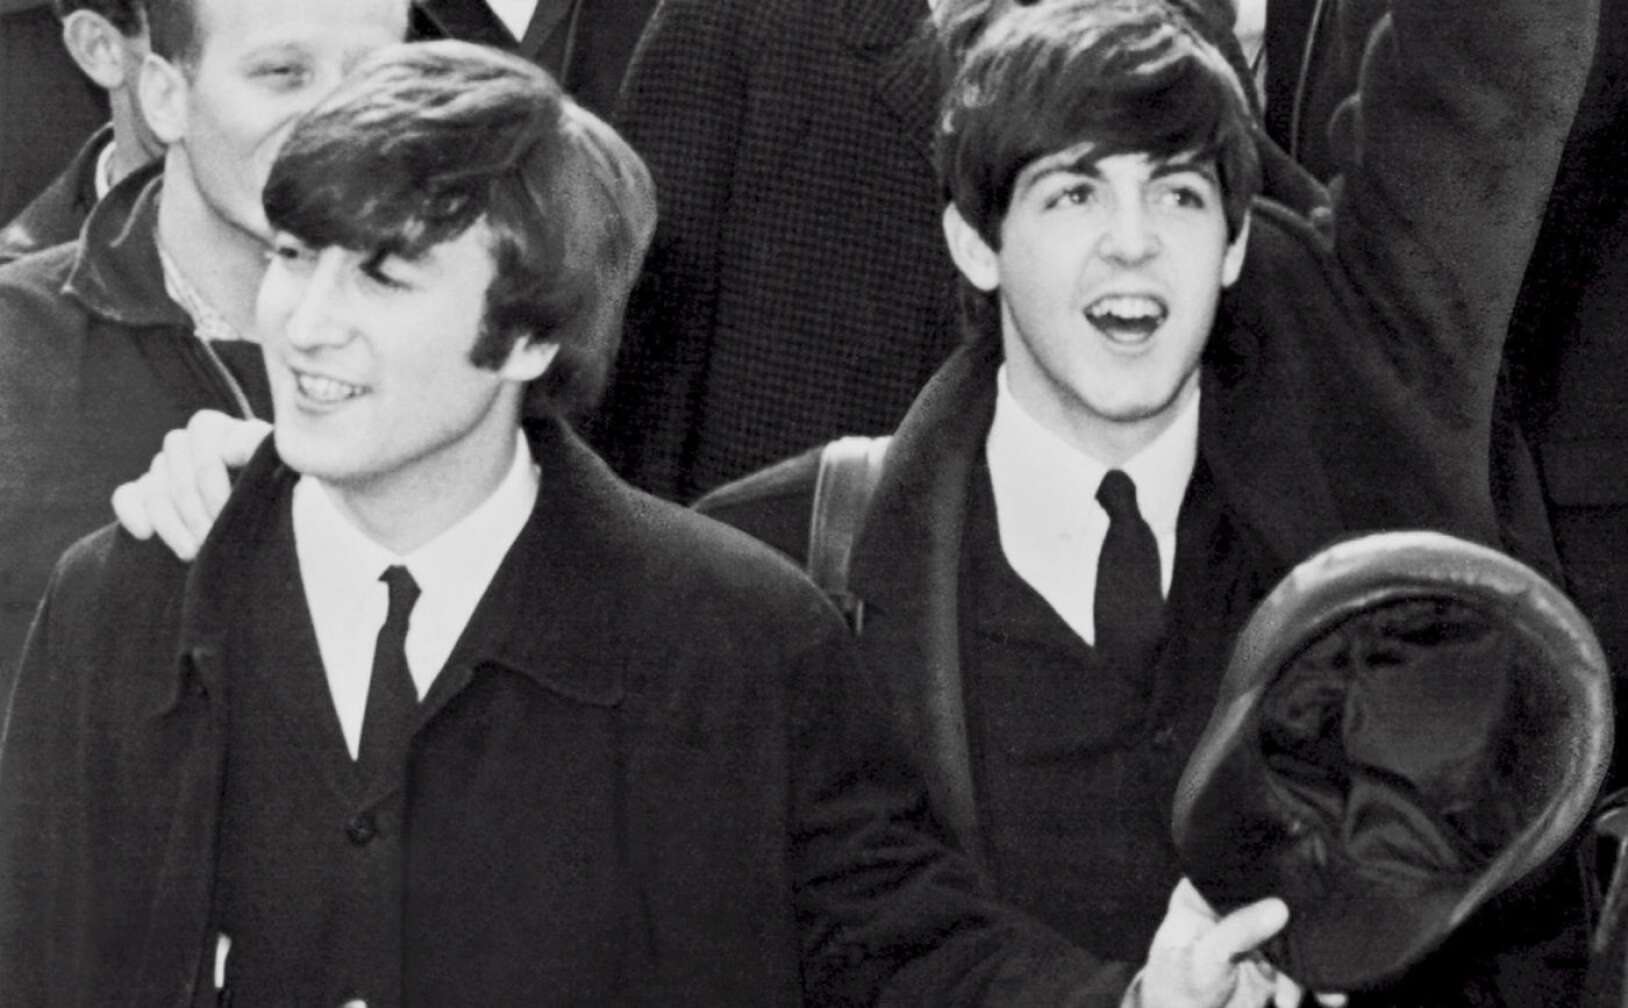 John Lennon und Paul McCartney